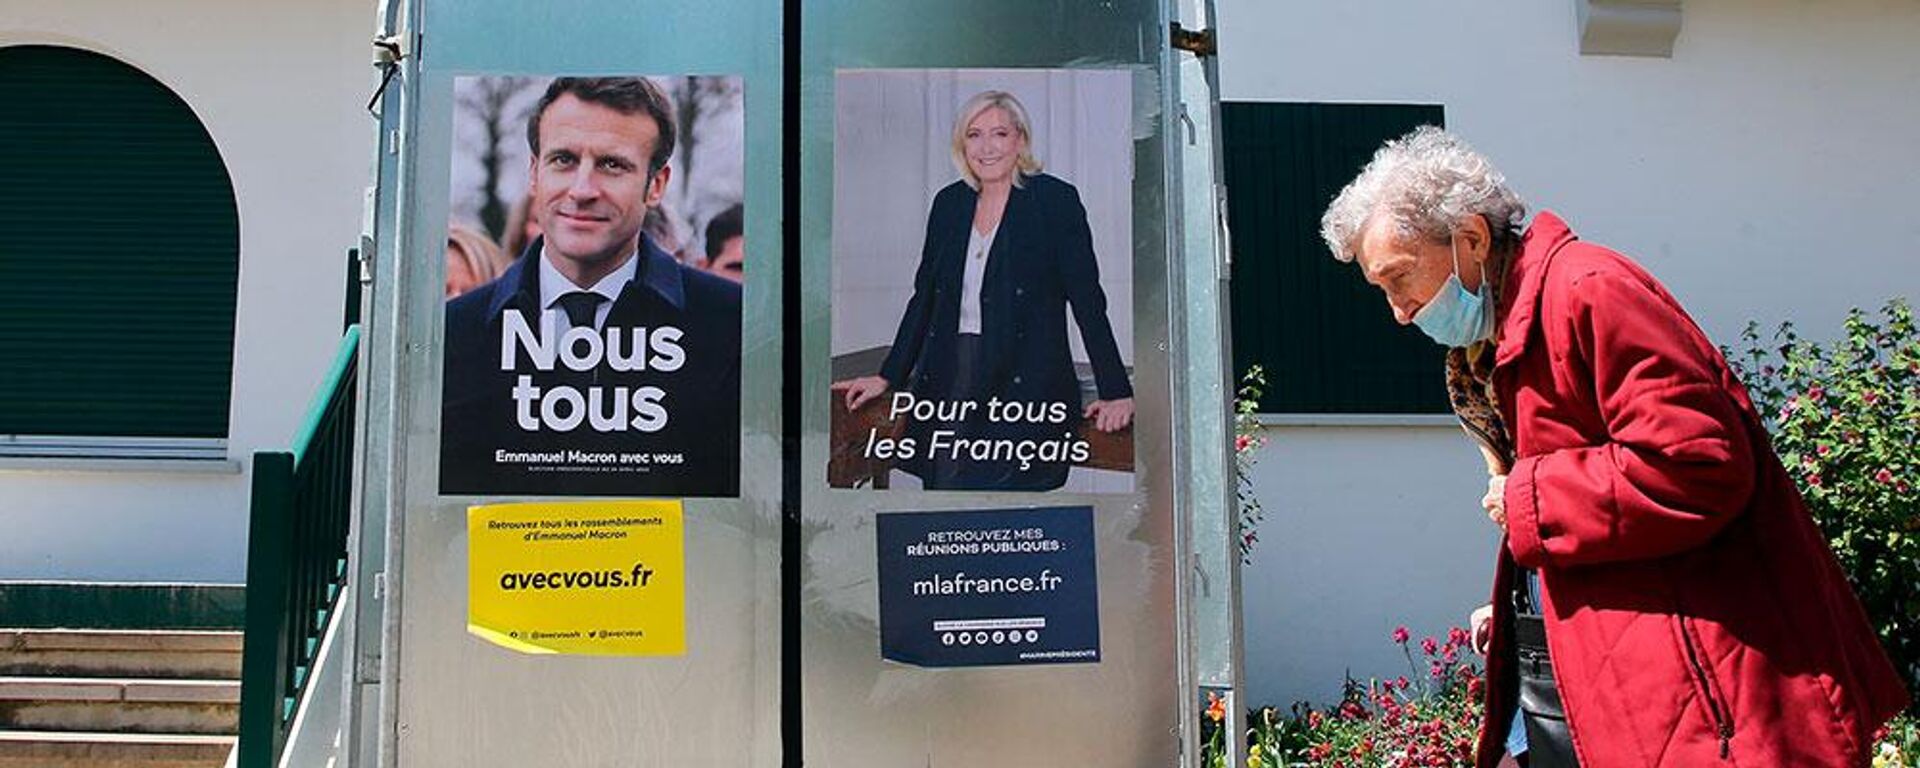 Fransa'da seçmenler, cumhurbaşkanlığı seçiminin ikinci turu için sandık başına gidiyor. Görevdeki cumhurbaşkanı Emmanuel Macron ile aşırı sağcı aday Marine Le Pen arasındaki seçim için oy verme işlemi başladı.  - Sputnik Türkiye, 1920, 25.04.2022